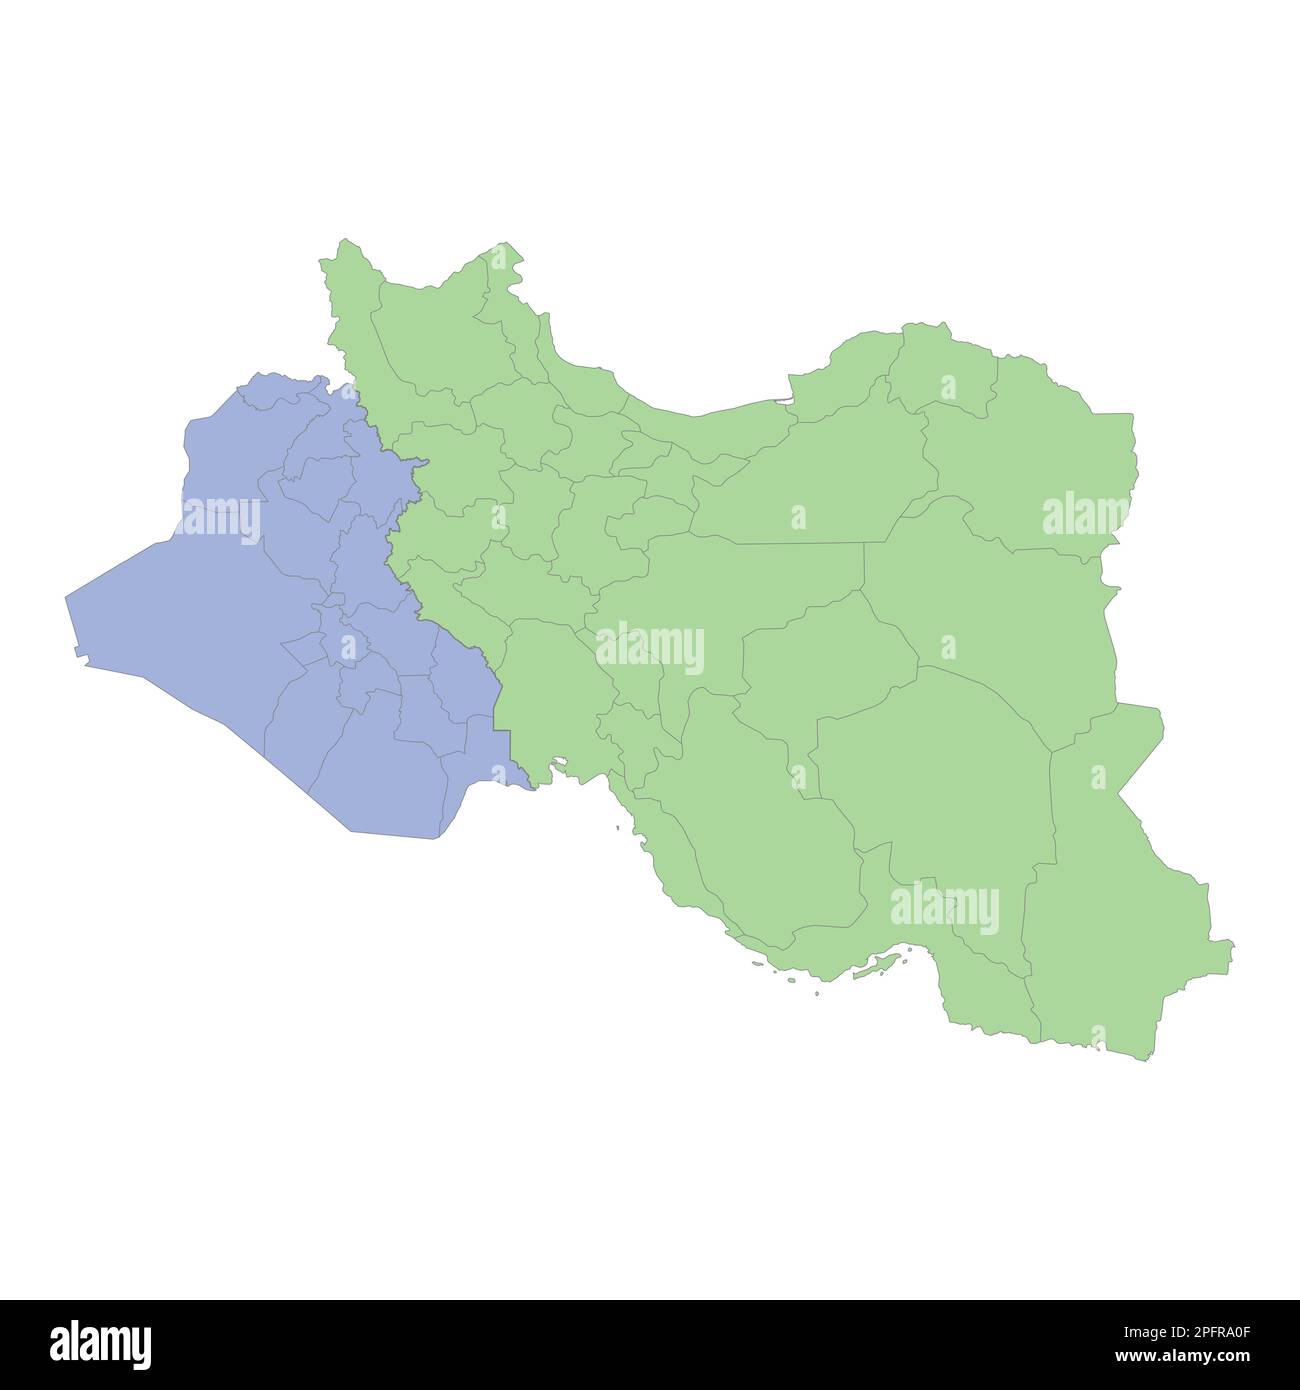 Mappa politica di alta qualità di Iran e Iraq con i confini delle regioni o province. Illustrazione vettoriale Illustrazione Vettoriale